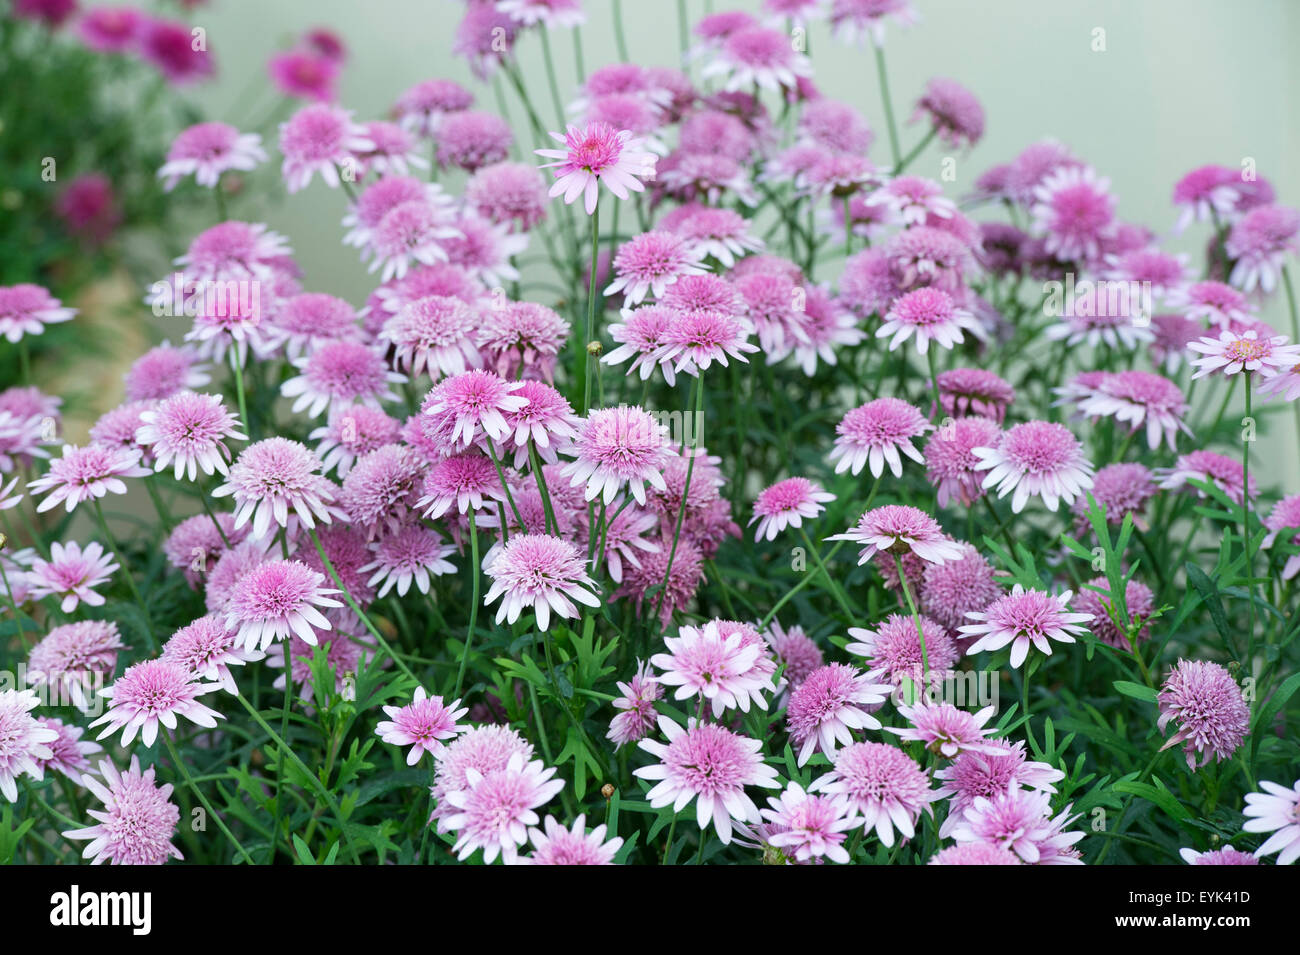 Argyranthemum Frutescens "Madeira Crested Pink verbessert". Marguerite Daisy Blumen Stockfoto